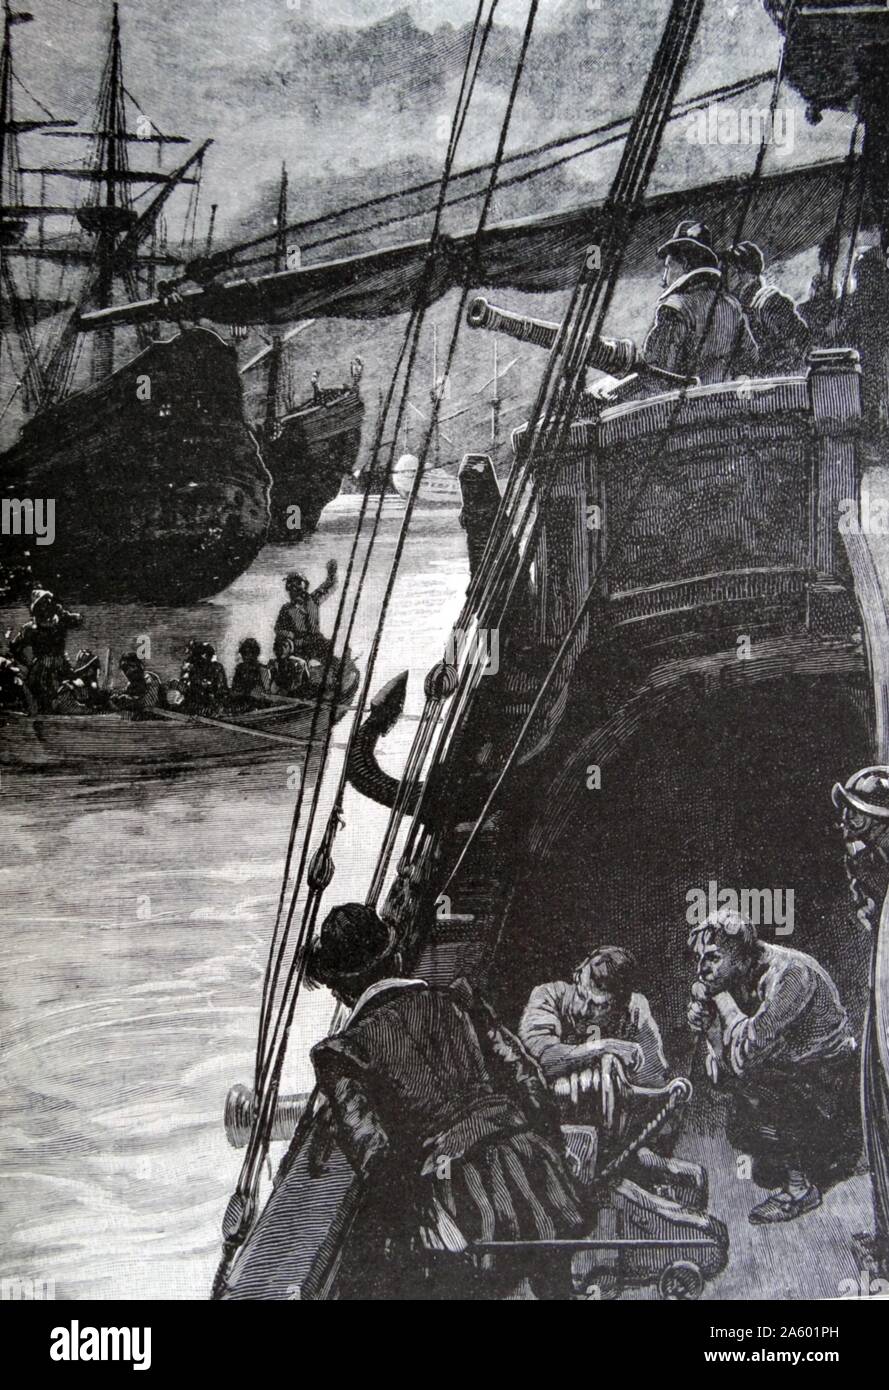 Illustrazione della Golden Hind, un galeone inglese più noto per la sua circumnavigazione del globo tra 1577 e 1580, capitanata da Sir Francis Drake. Datata XVI Secolo Foto Stock